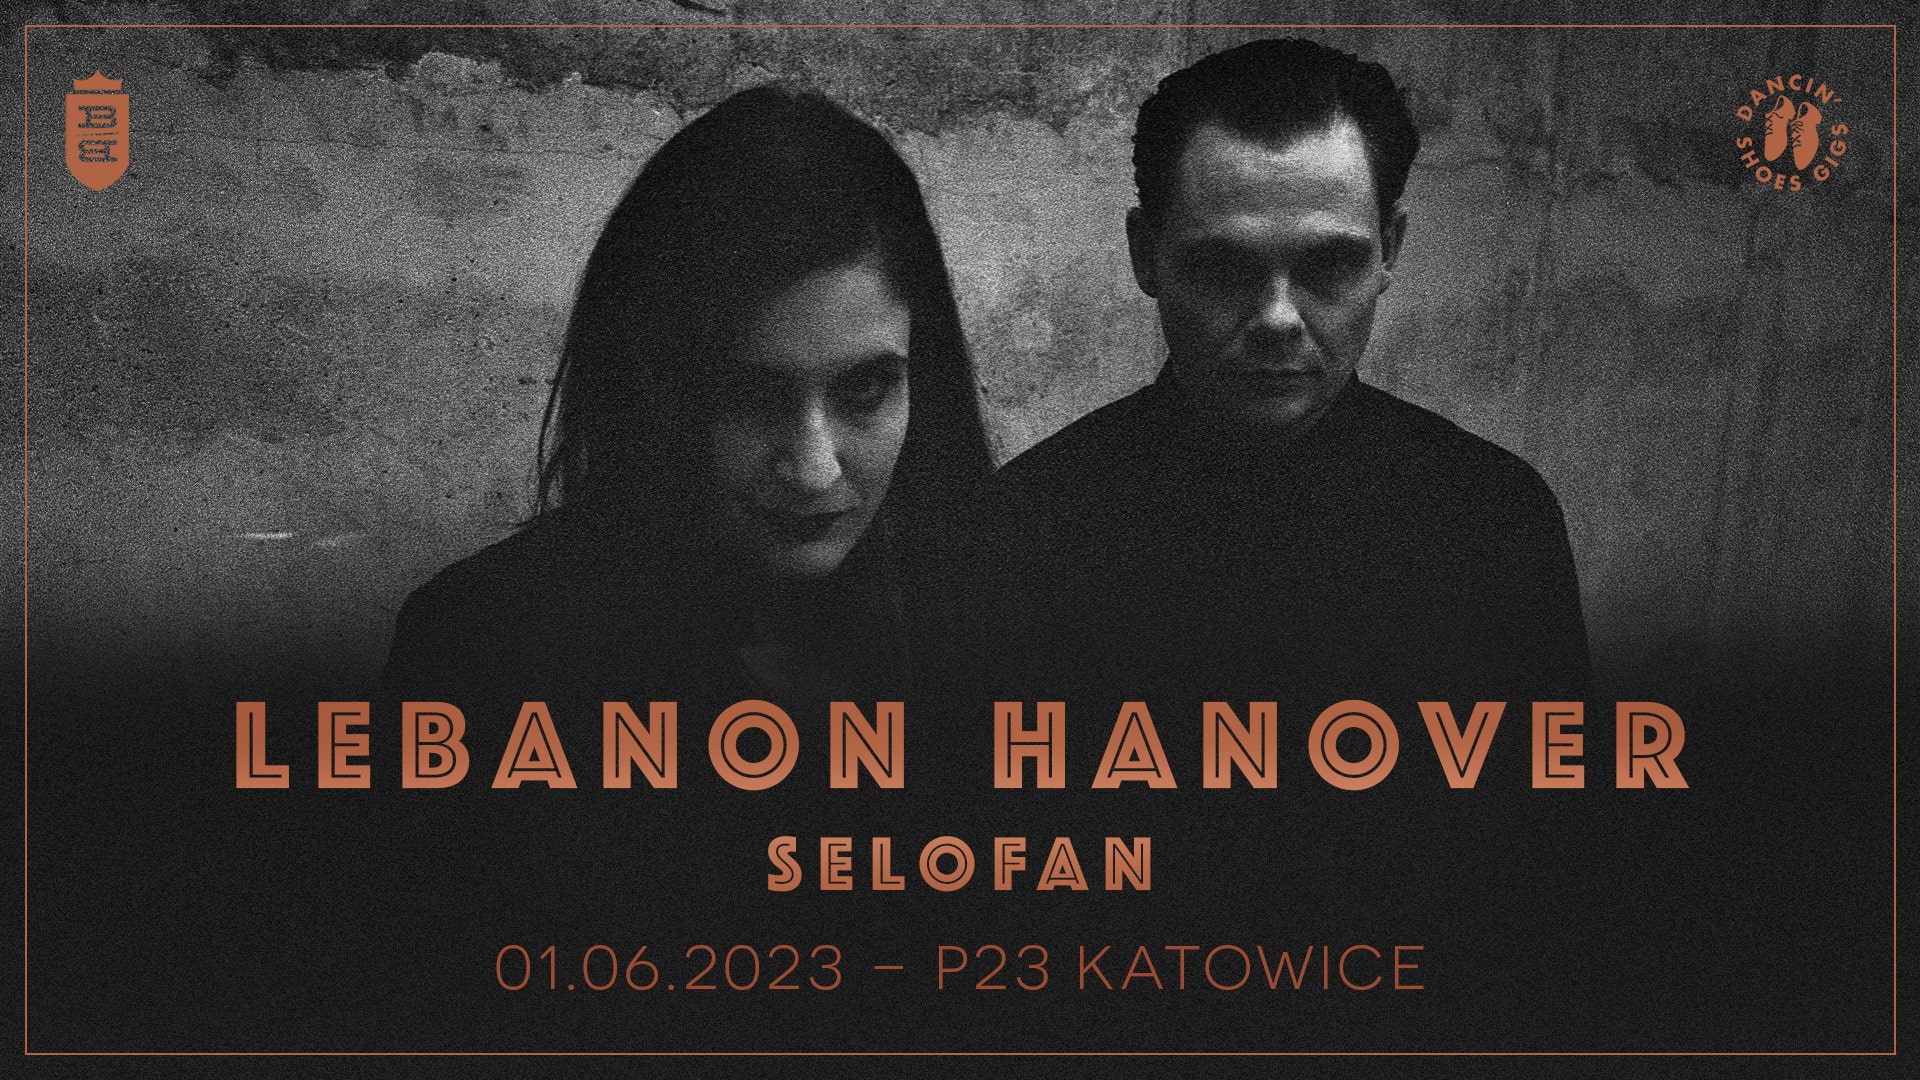 LEBANON HANOVER & SELOFAN // 01.06.2023 // P23 // Katowice